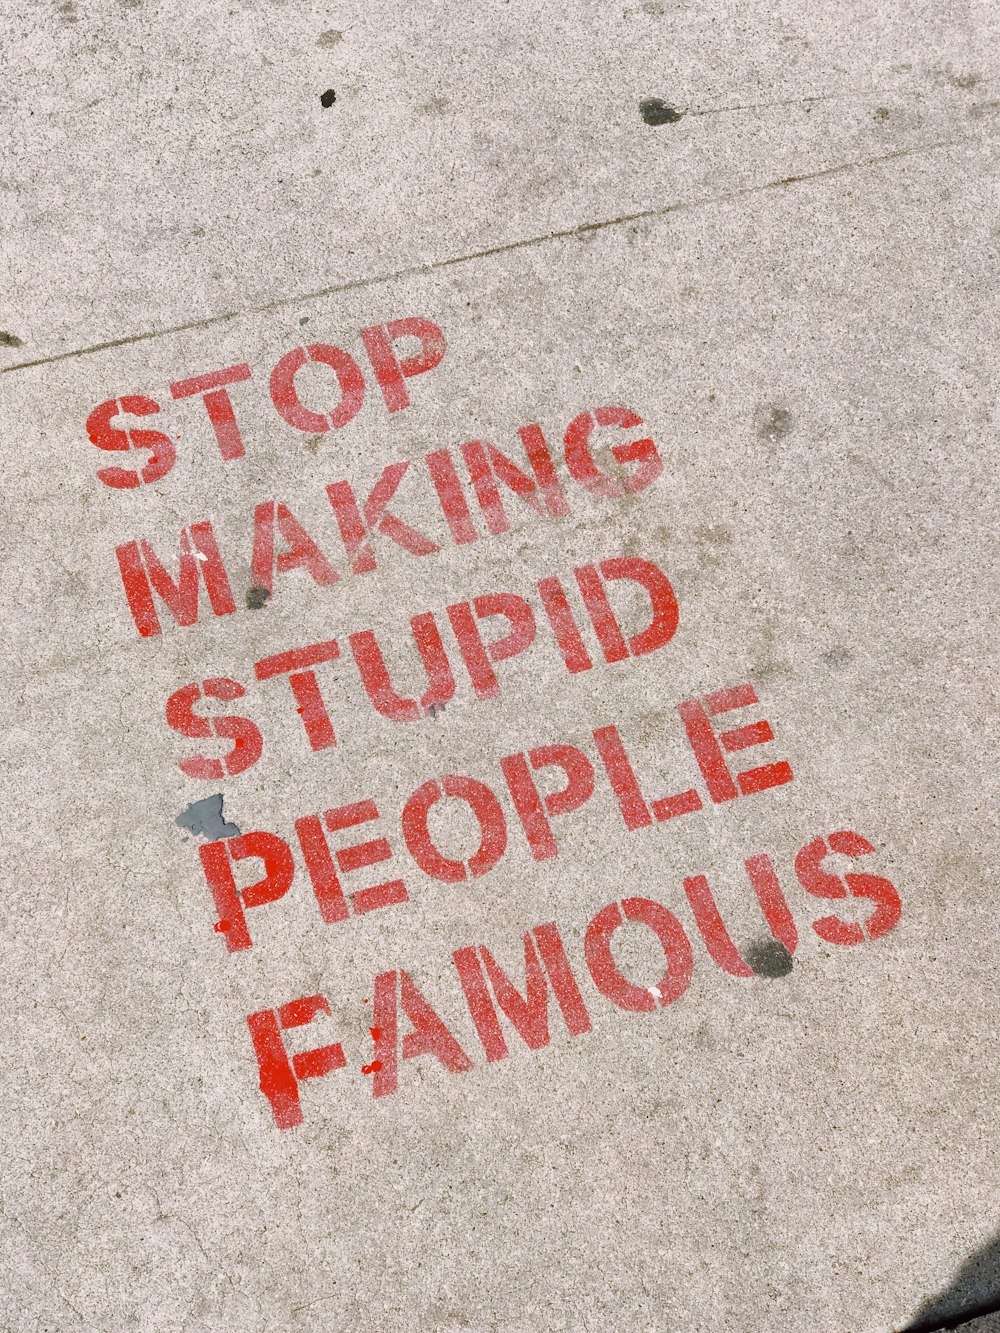 愚かな人々を有名な看板にするのをやめなさい